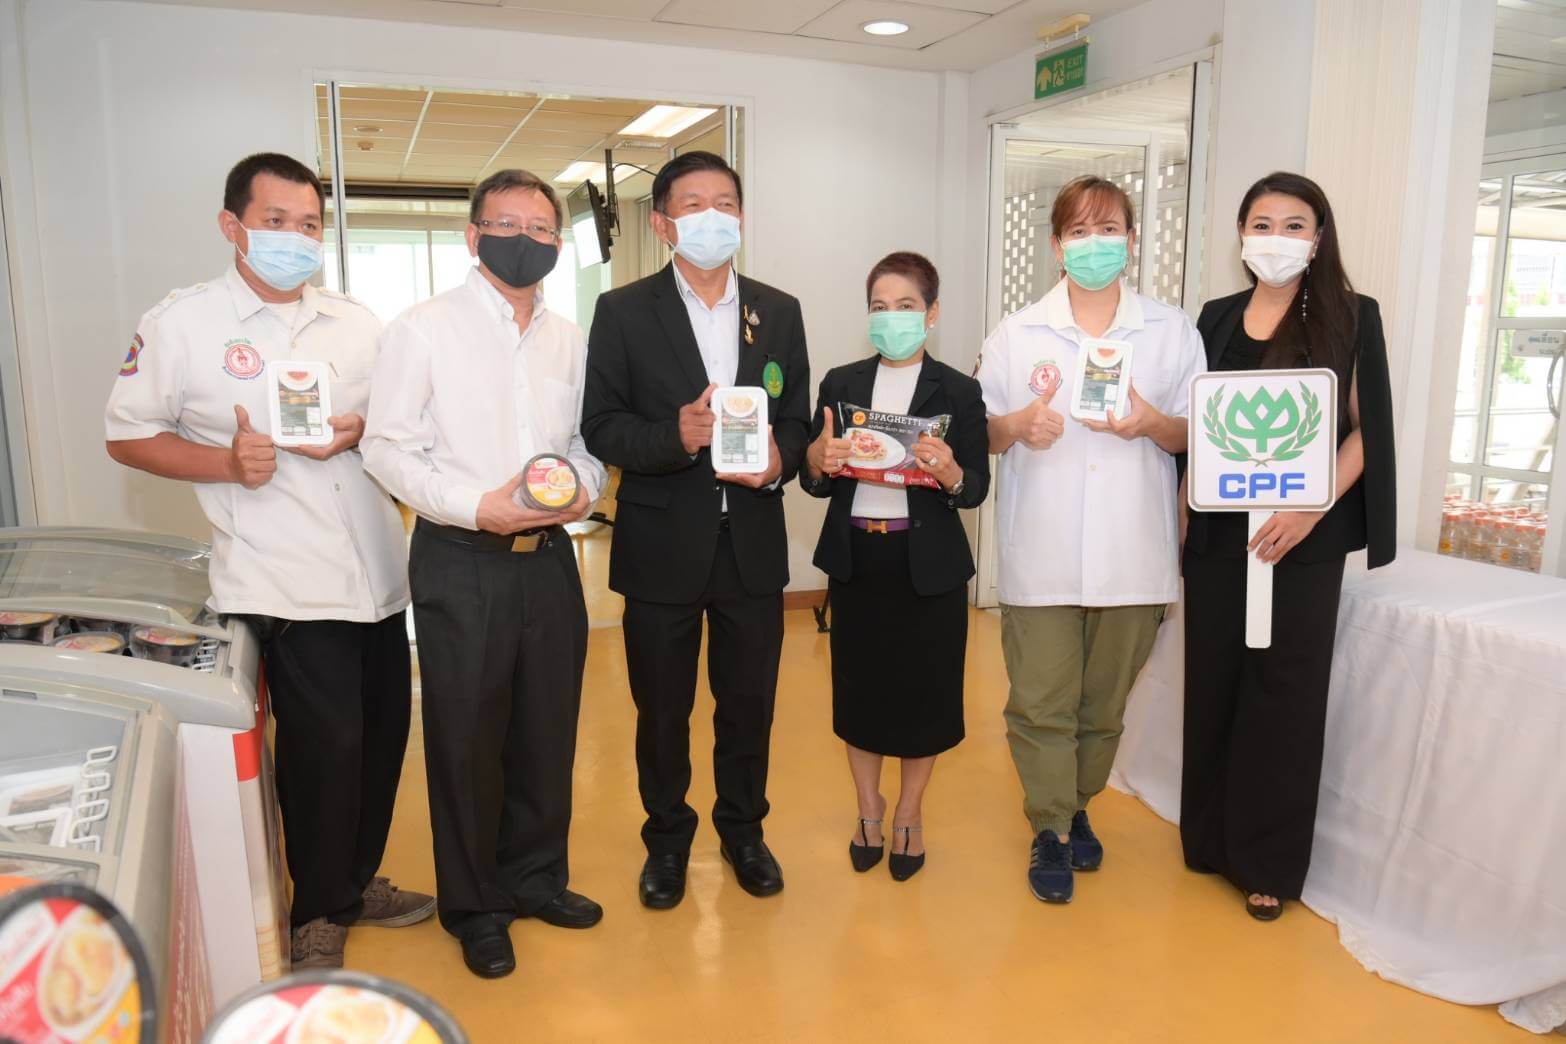 ซีพีเอฟ สนับสนุนอาหารจากใจแก่ “โรงพยาบาลสนาม” ต่อเนื่อง เสริมกำลังใจทีมแพทย์-พยาบาล หนุนไทยฝ่าวิกฤตโควิด-19 ระลอกใหม่